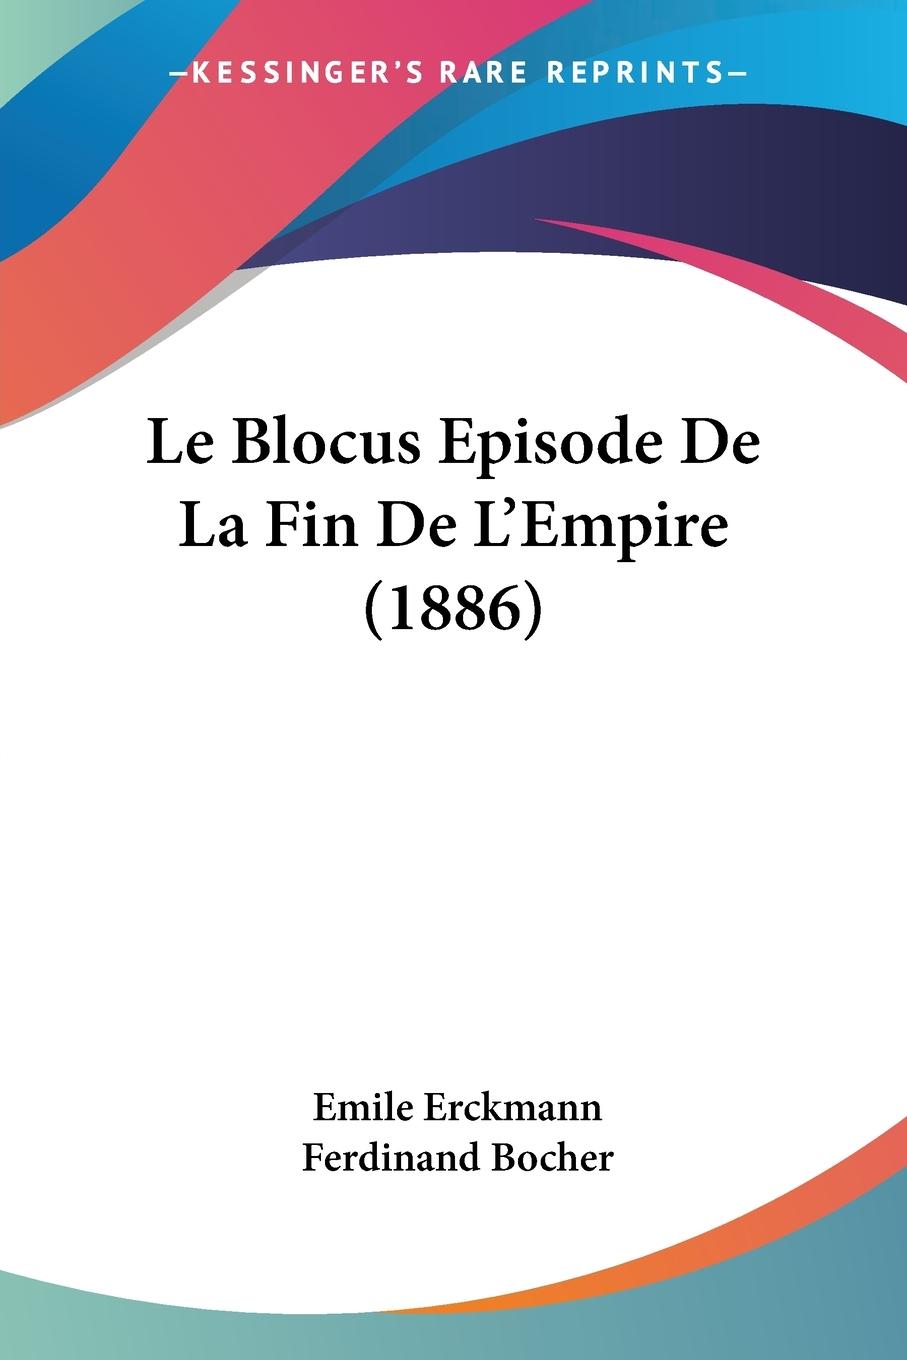 Le Blocus Episode De La Fin De L Empire (1886) - Erckmann, Emile